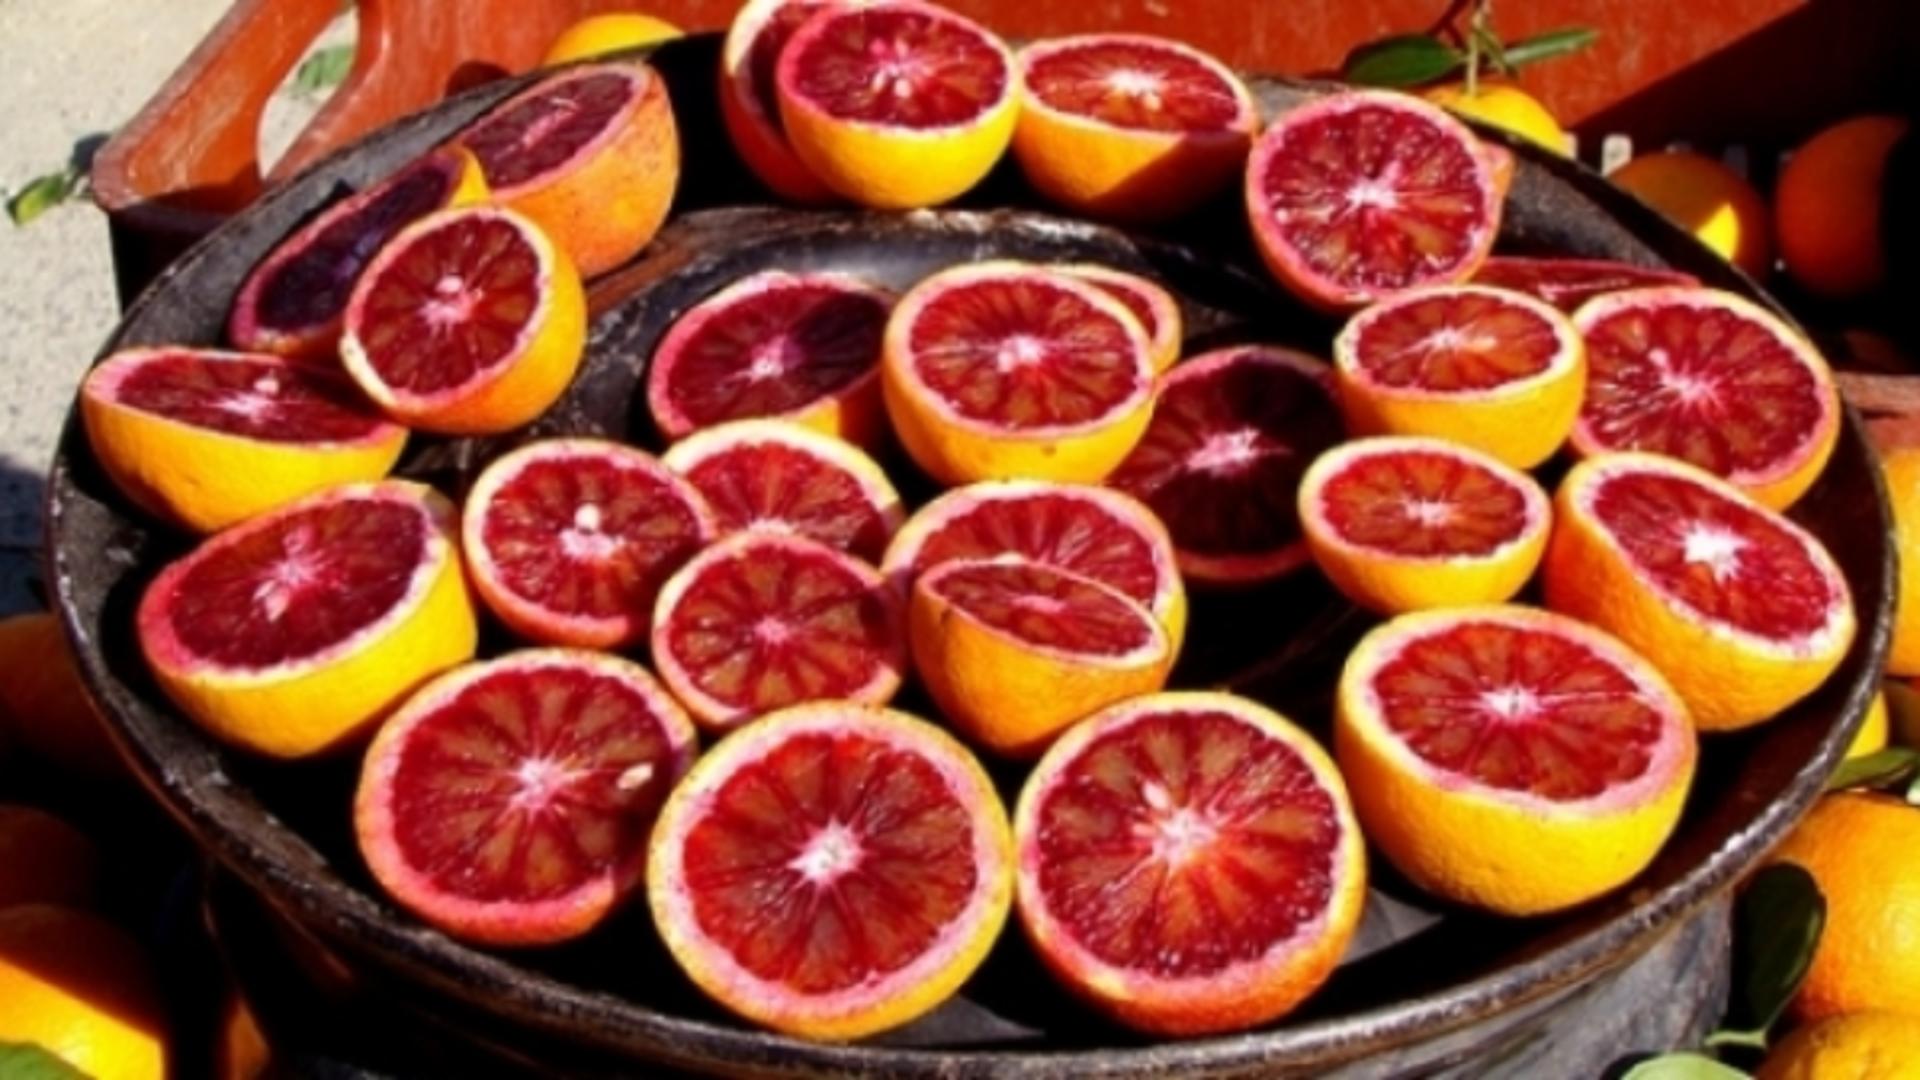 Ce se întâmplă în corpul tău dacă mănânci portocale ROȘII. Acum că știi, mai mănânci? 